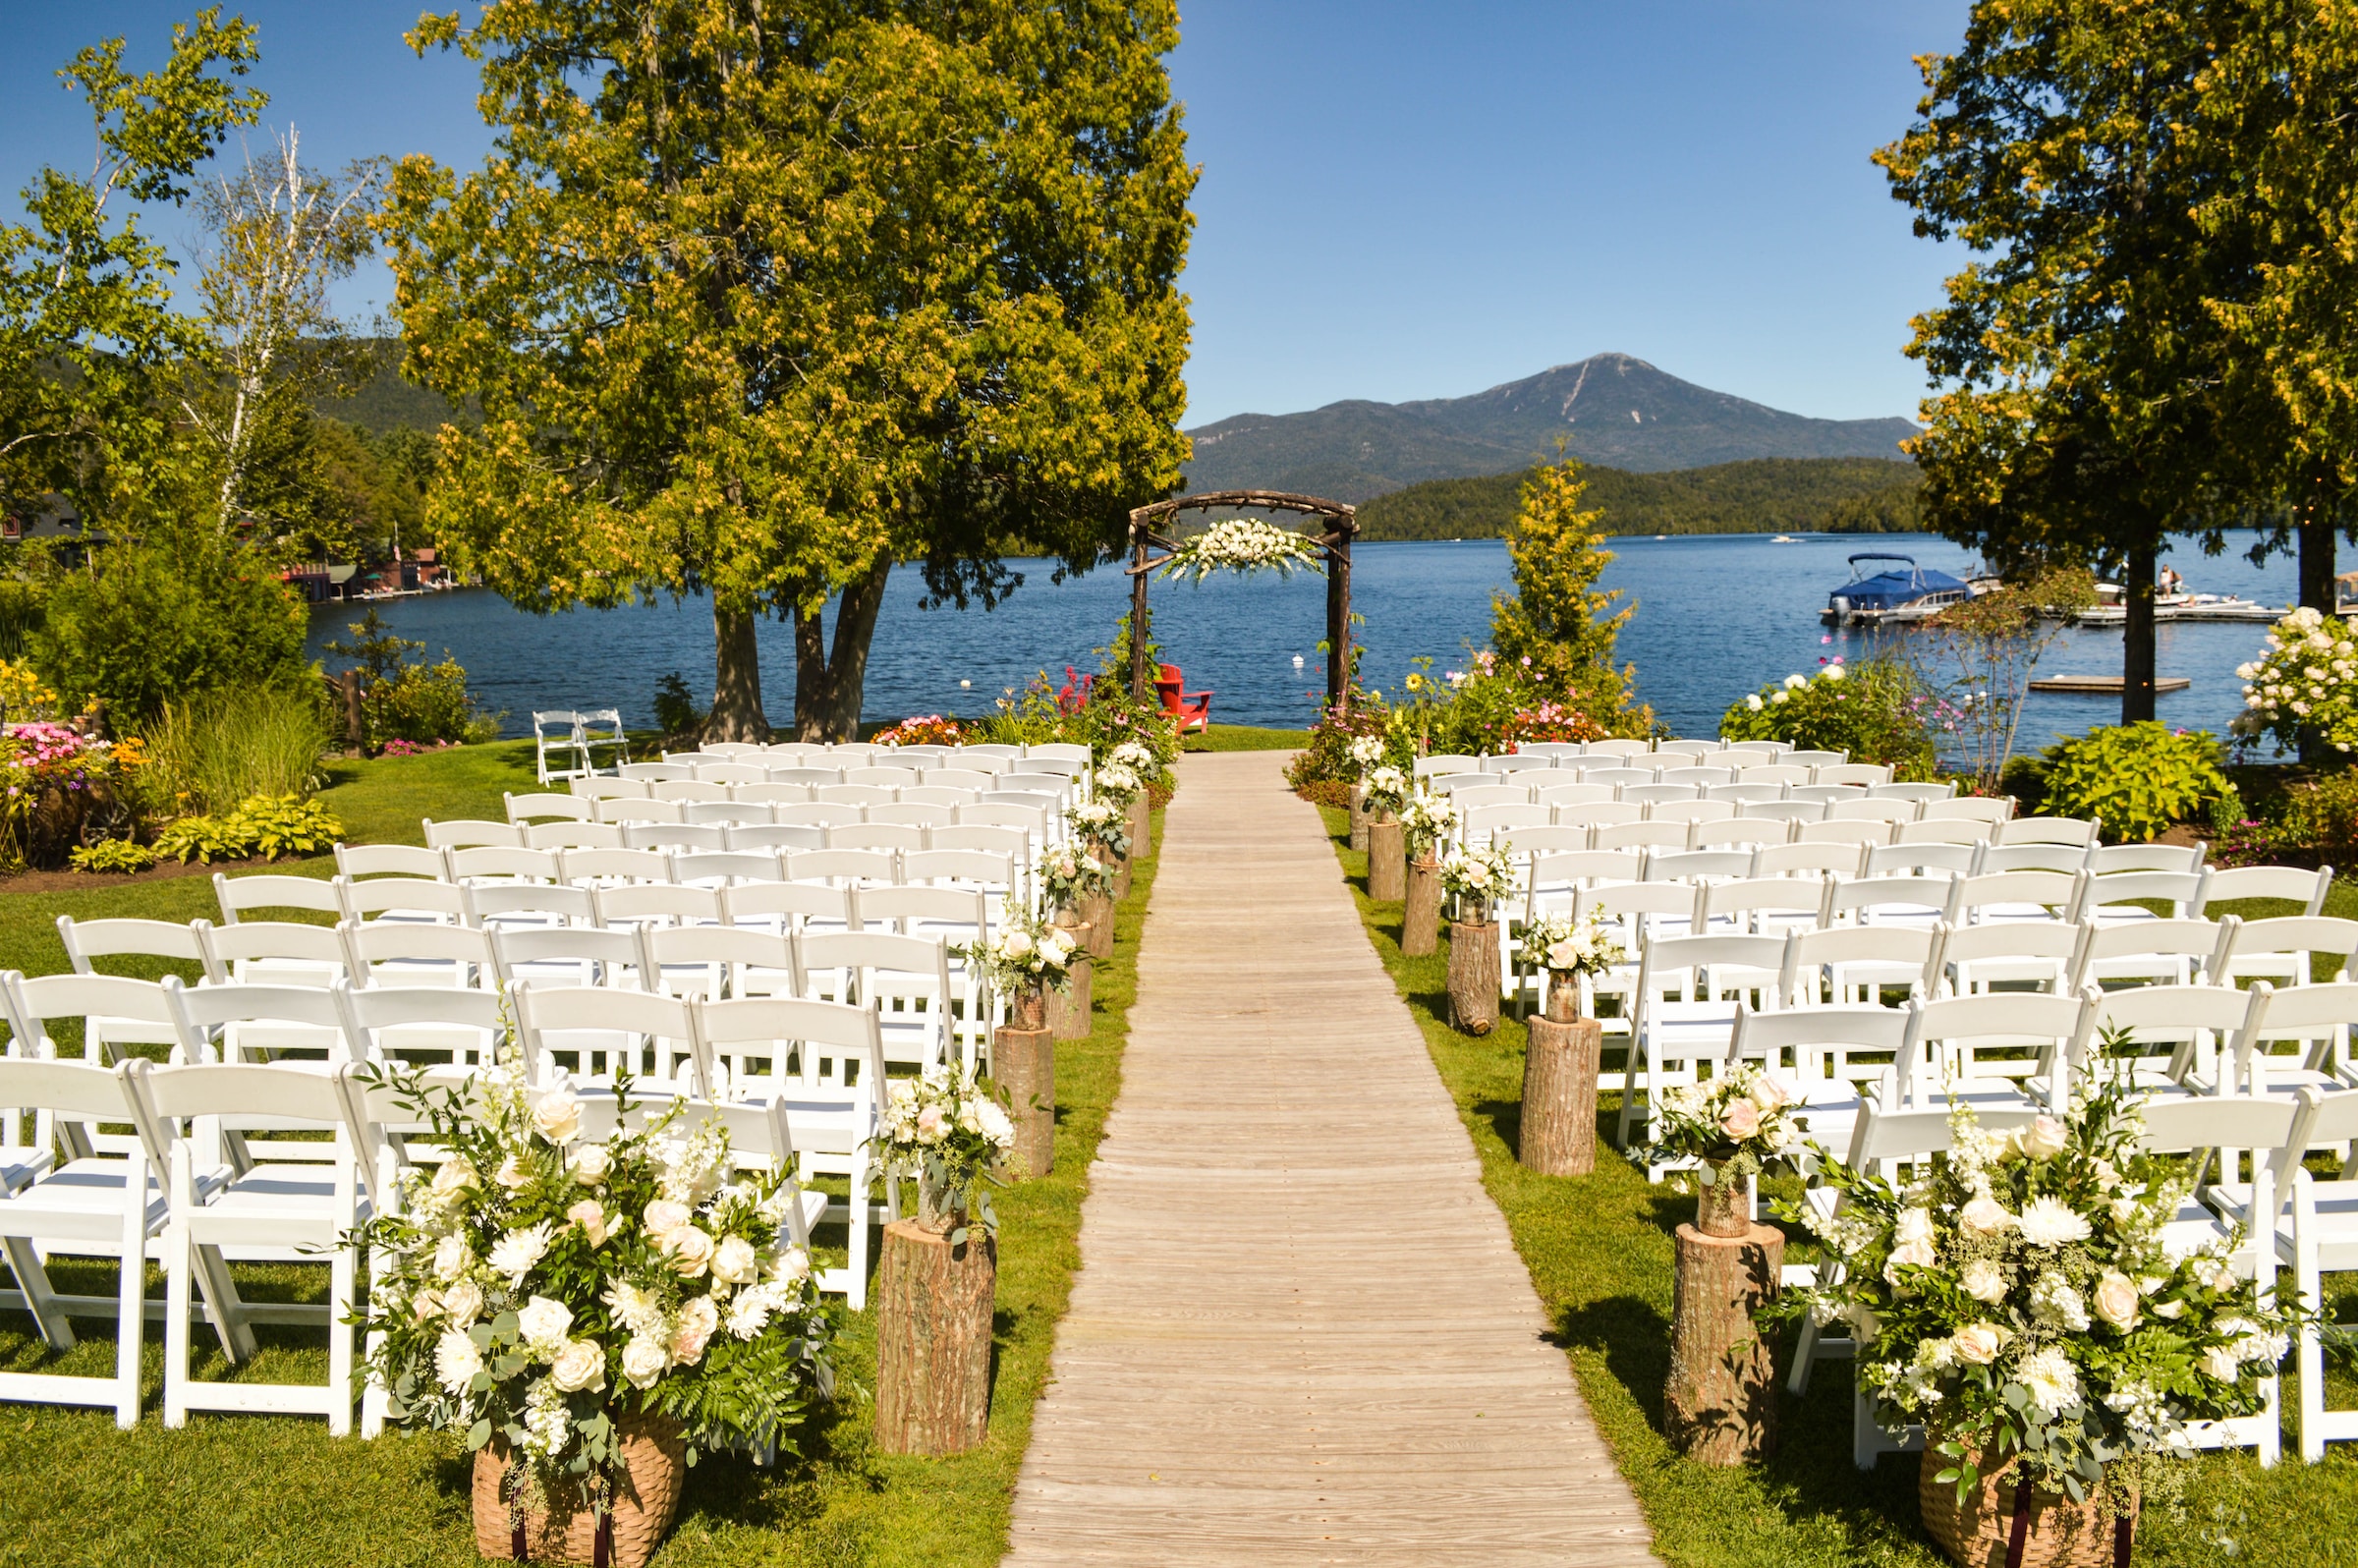 Un precioso lugar para celebrar una boda al aire libre. | Foto: Unsplash